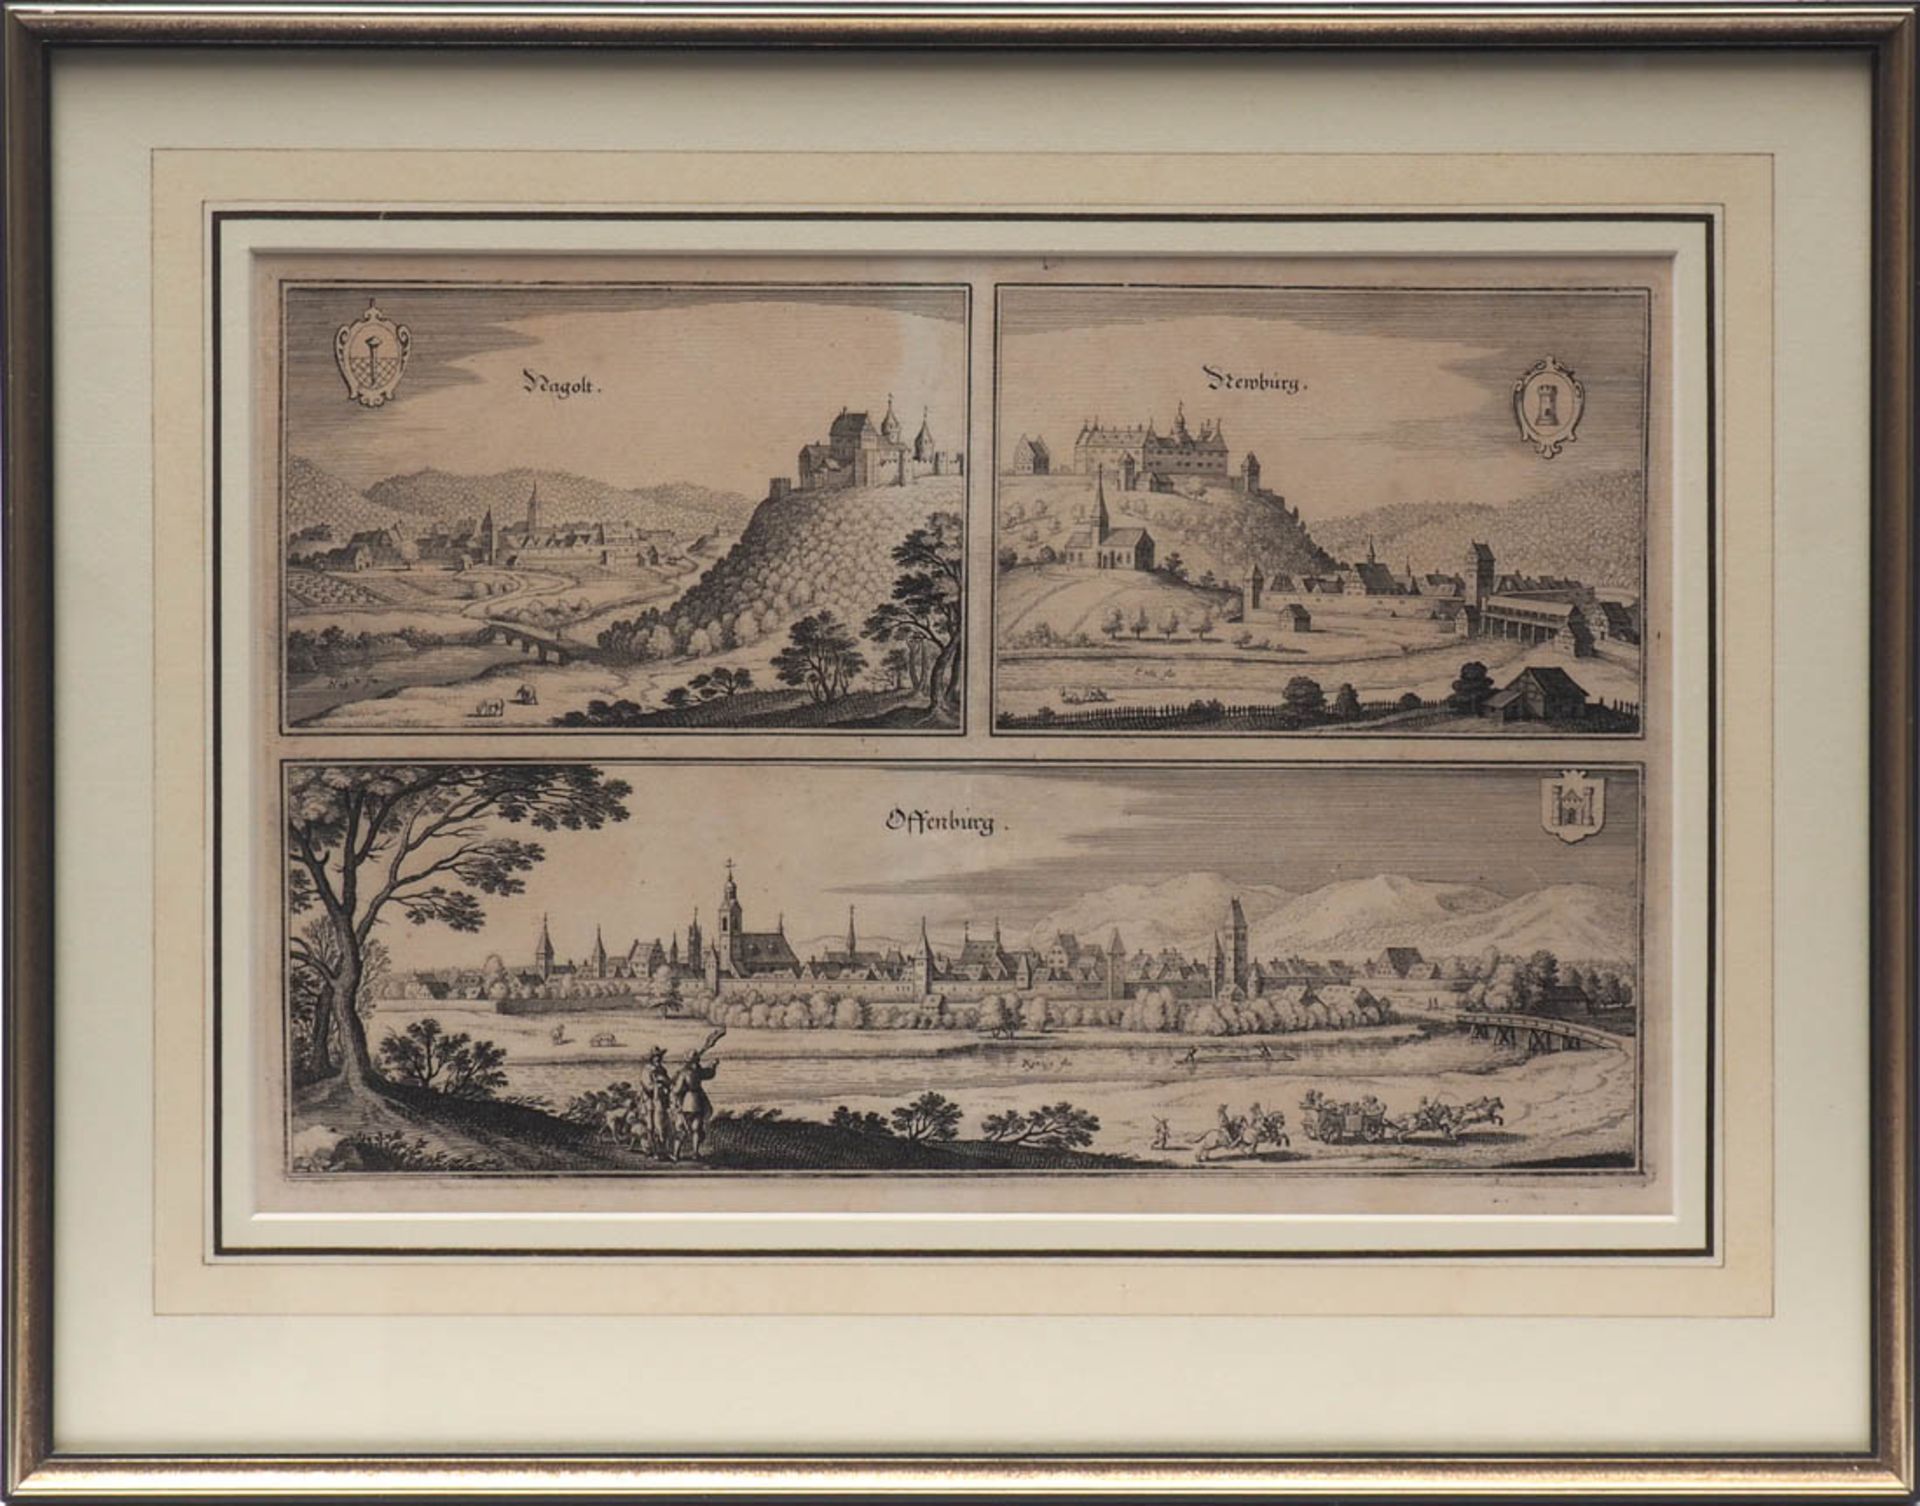 Merian, Matthäus I, 1593-1650 Ansichten von Nagold, Neuburg und Offenburg mit den Stadtwappen.